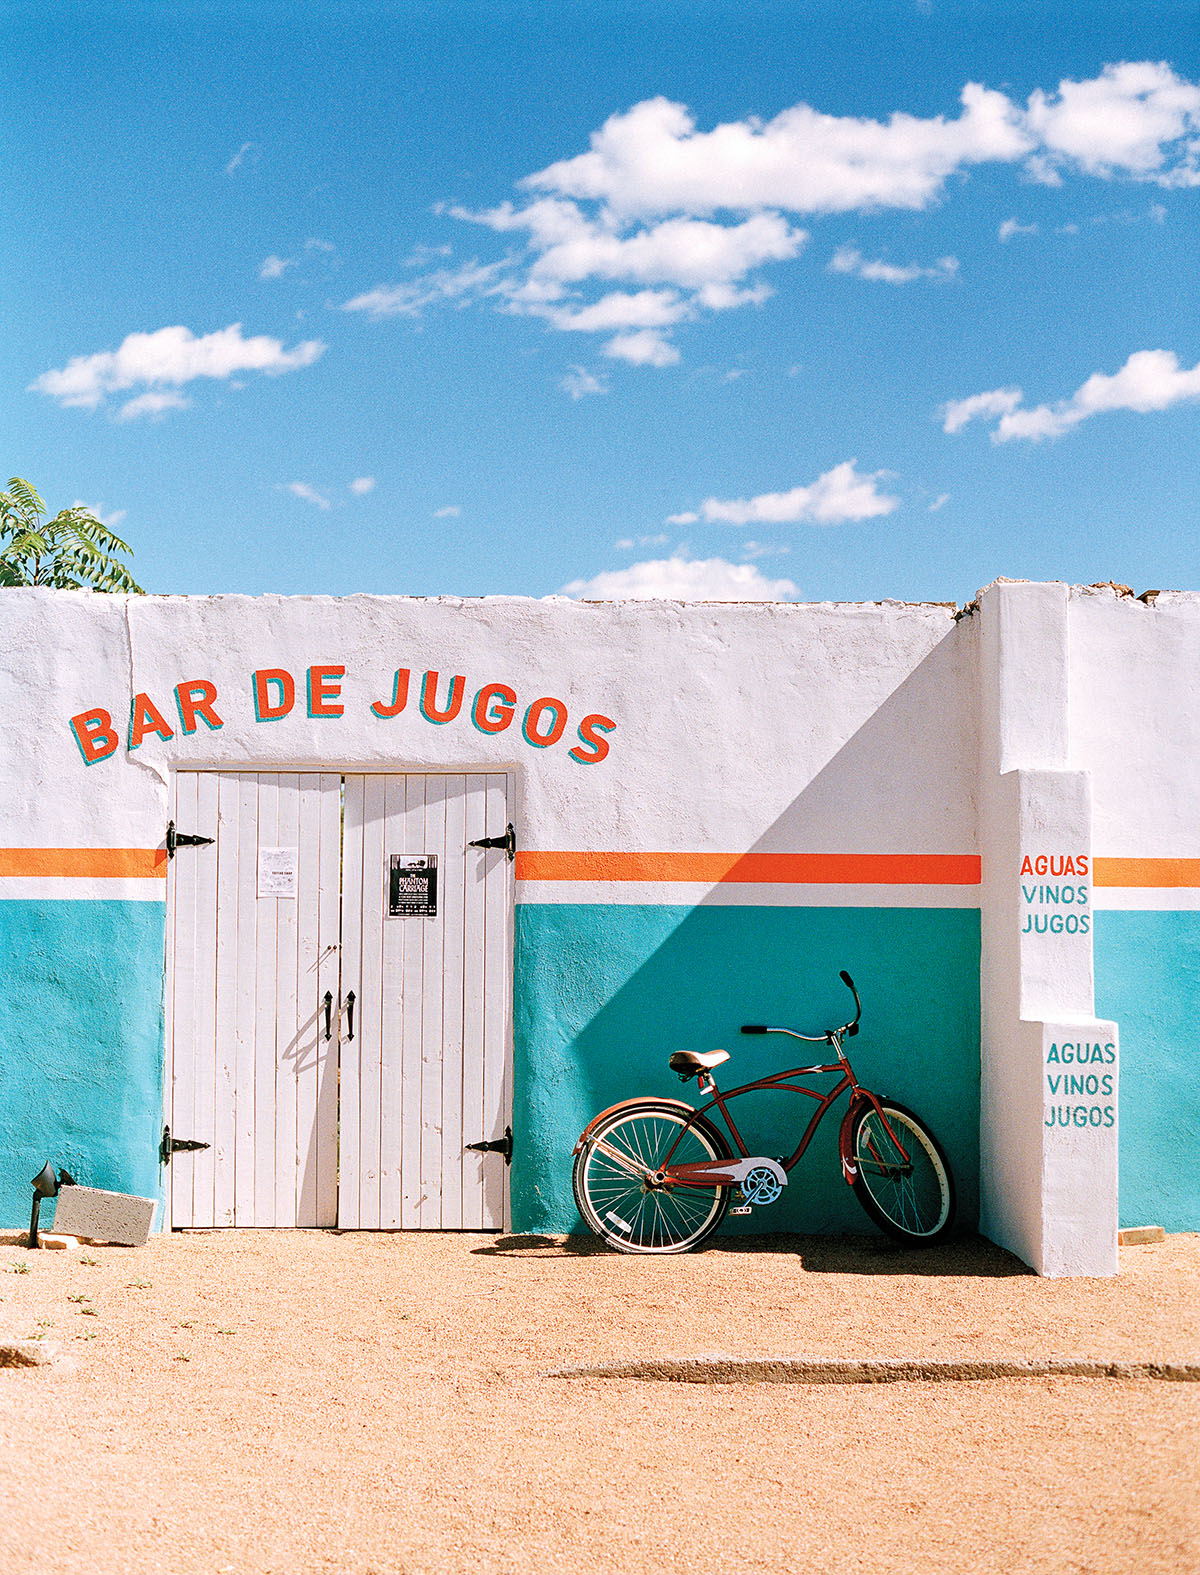 Entrance to Bar De Jugos in Marfa.